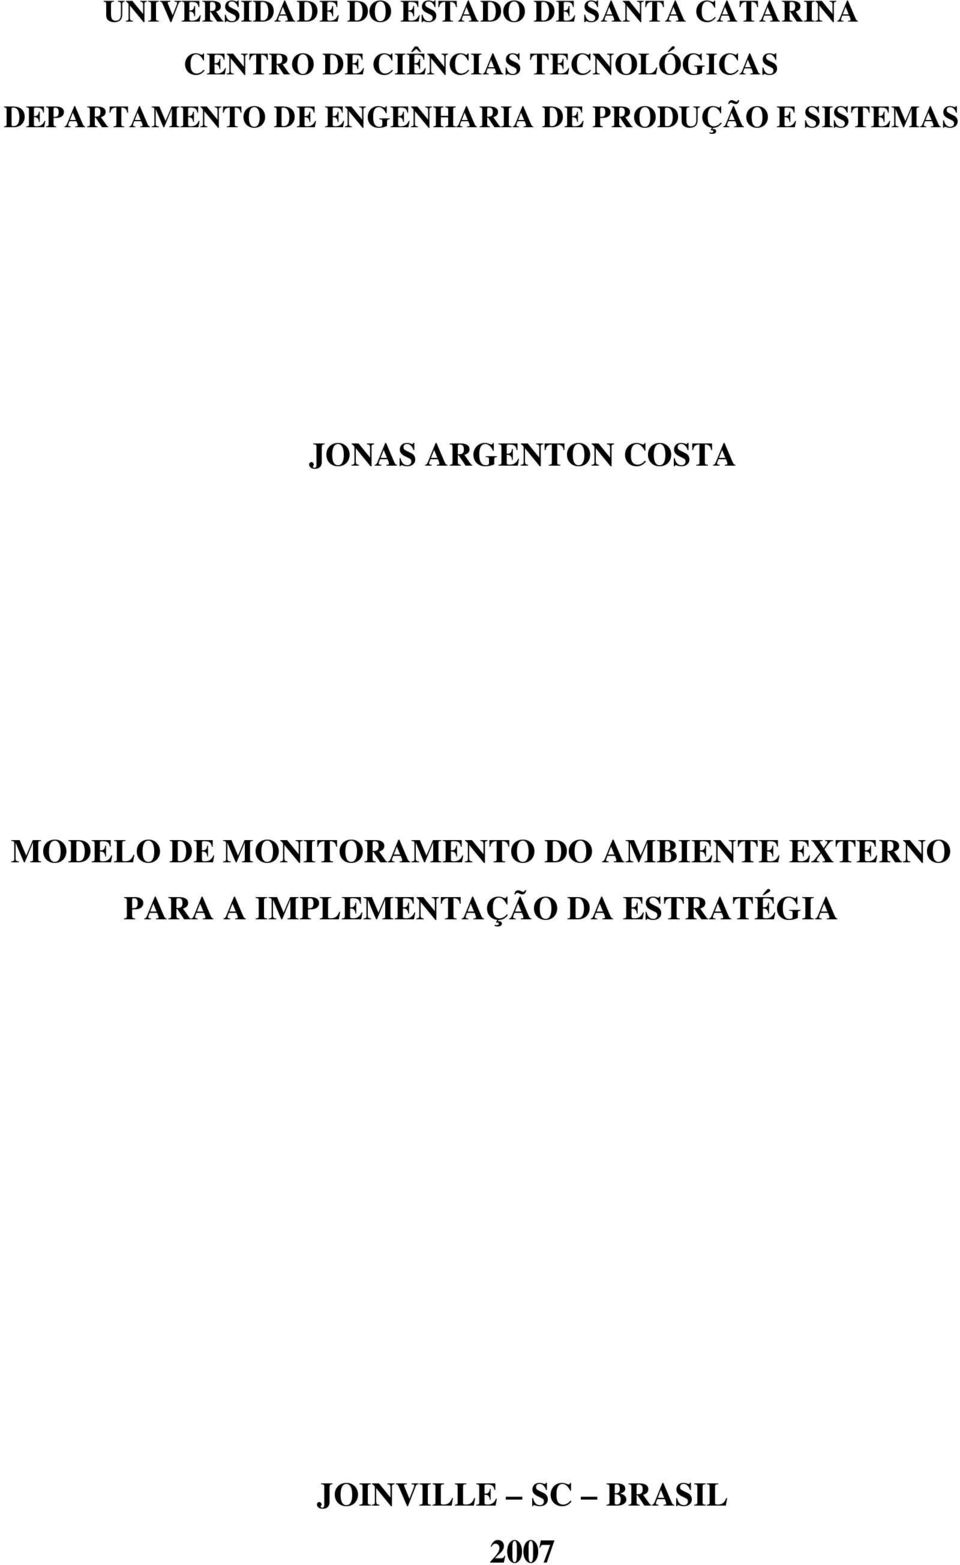 SISTEMAS JONAS ARGENTON COSTA MODELO DE MONITORAMENTO DO